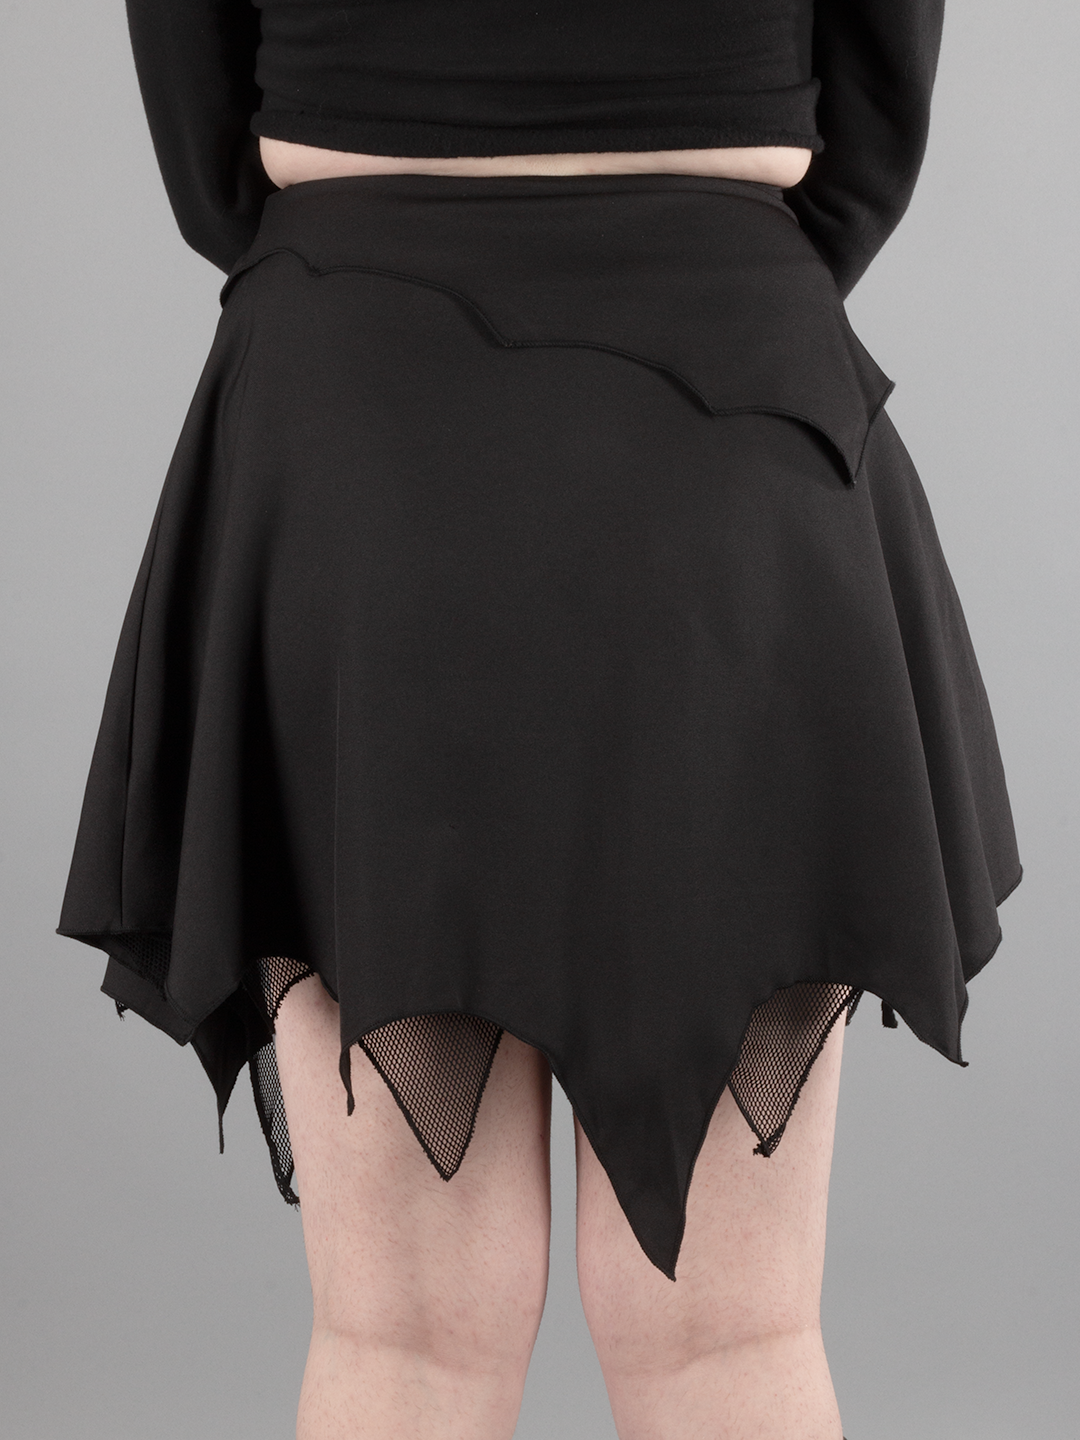 Sable Skirt